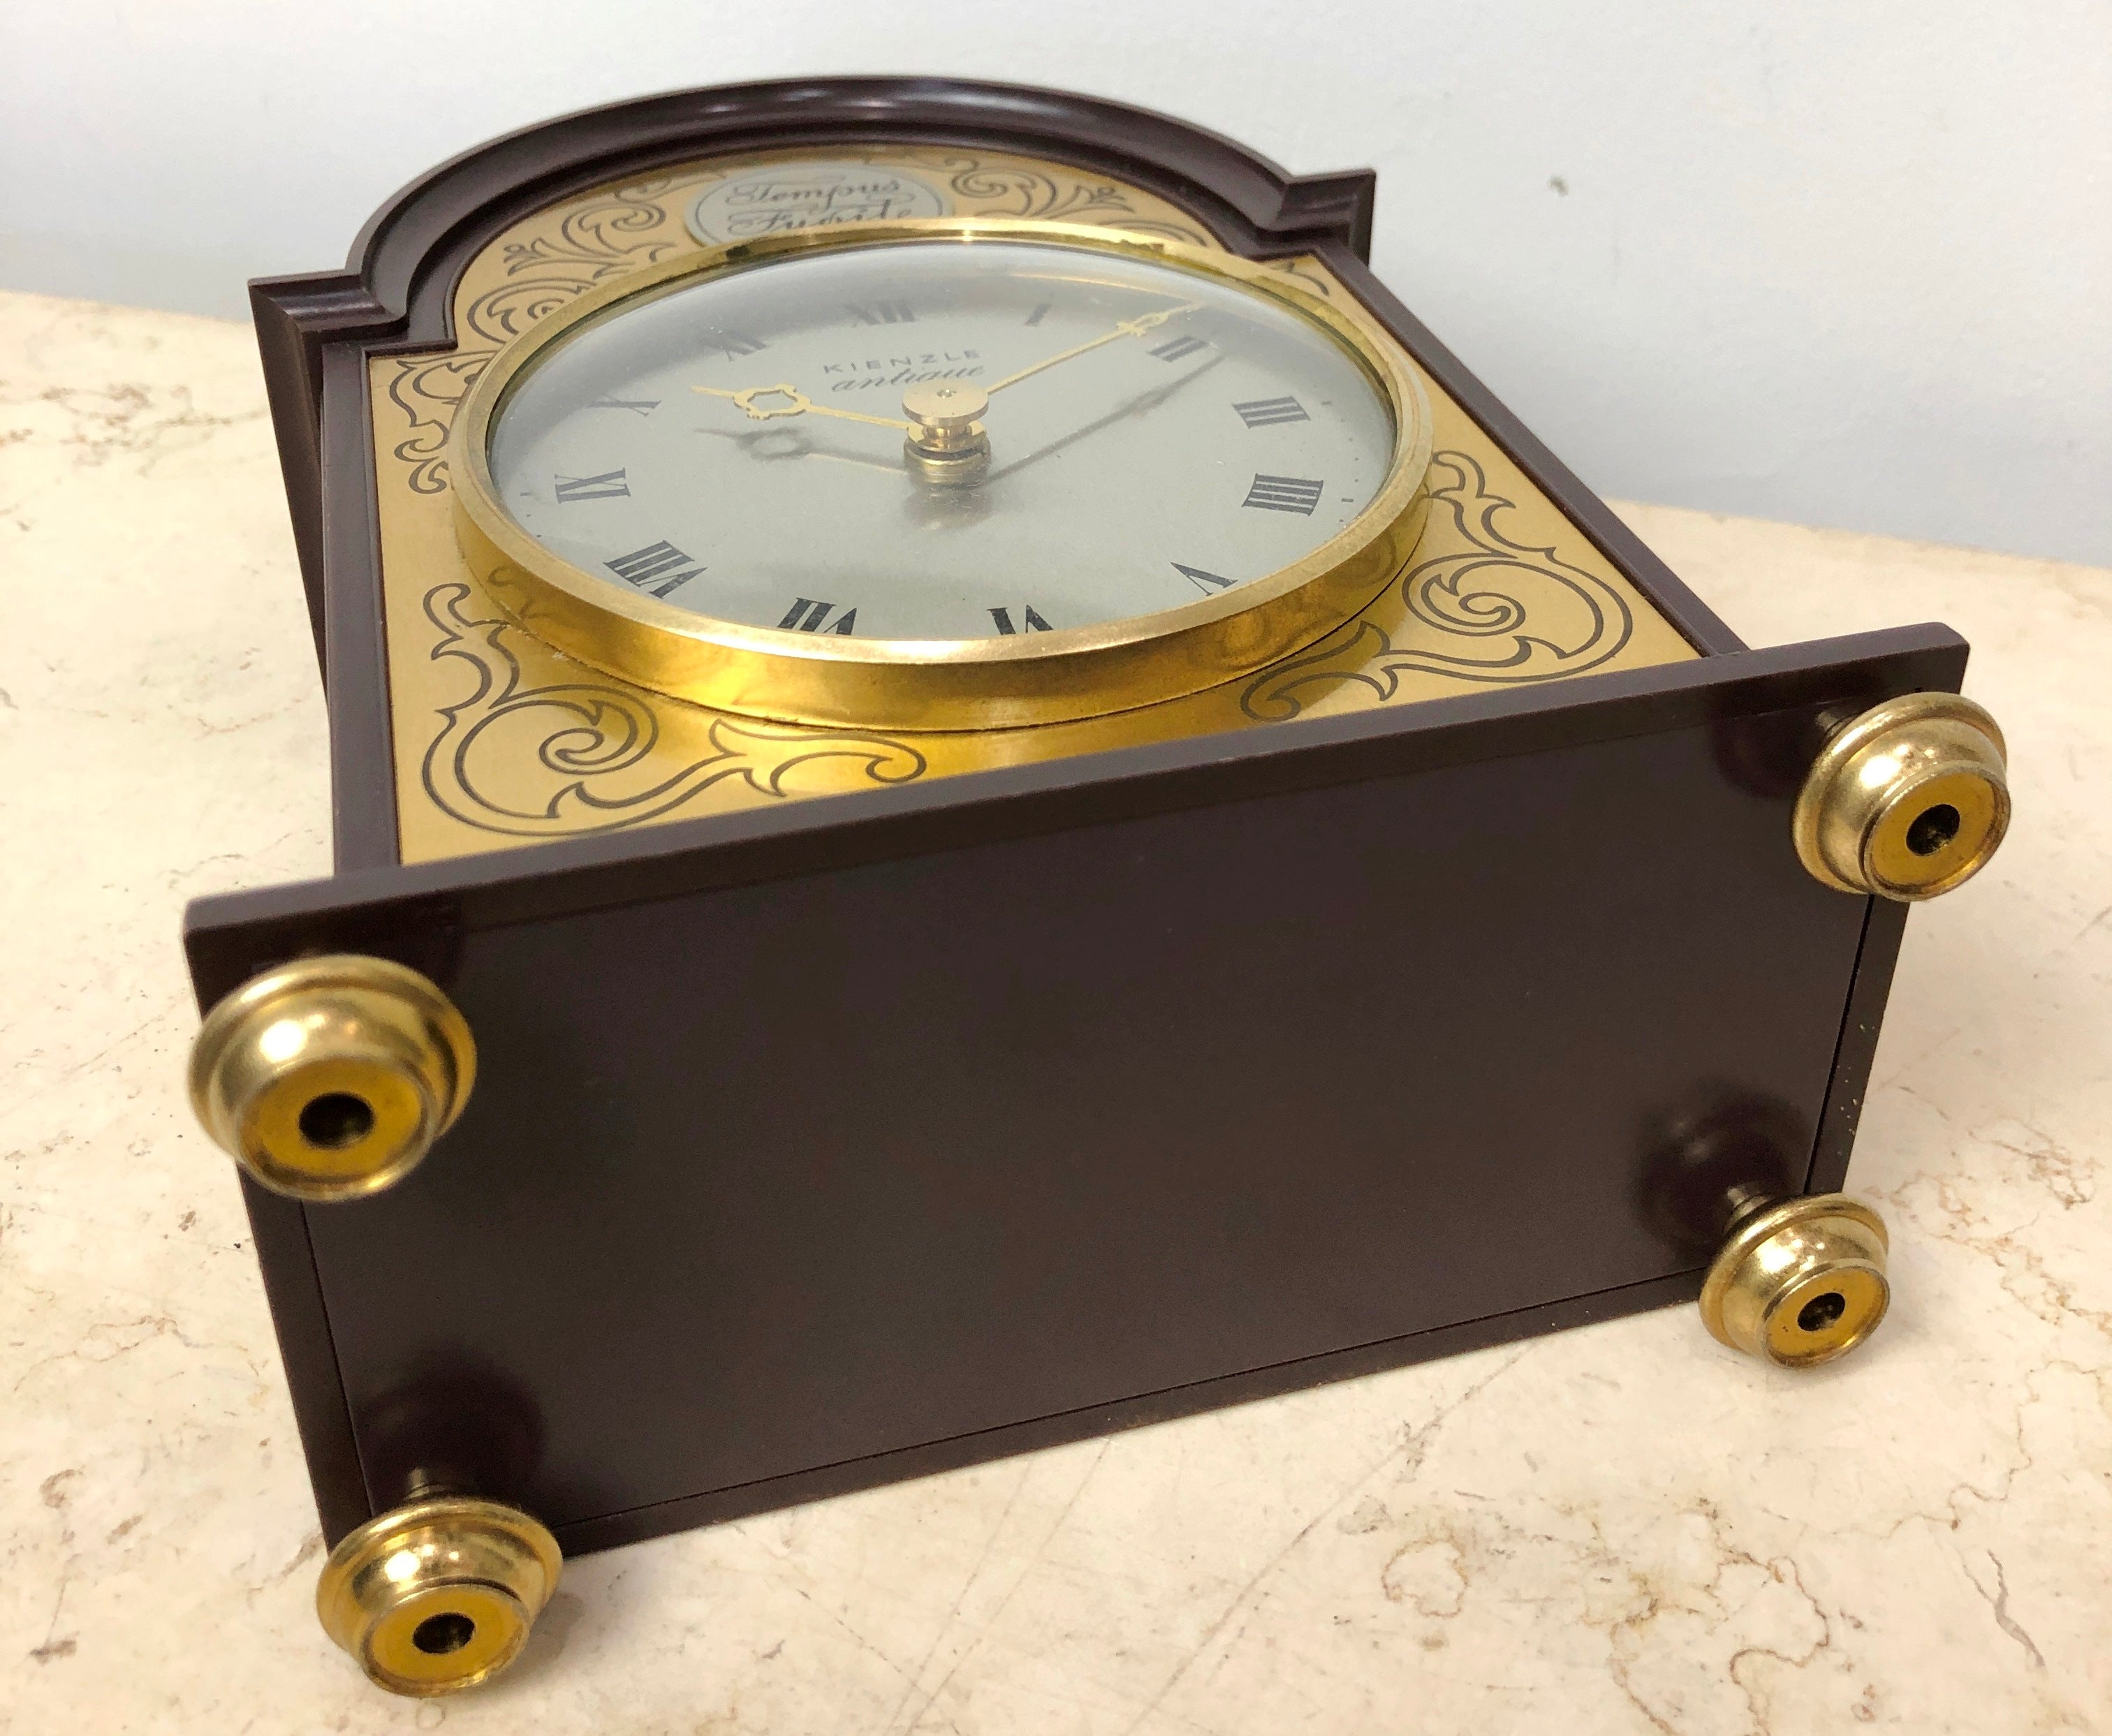 Vintage Bakelite Kienzle Tempus Fugit Quartz Mantel Clock | eXibit collection